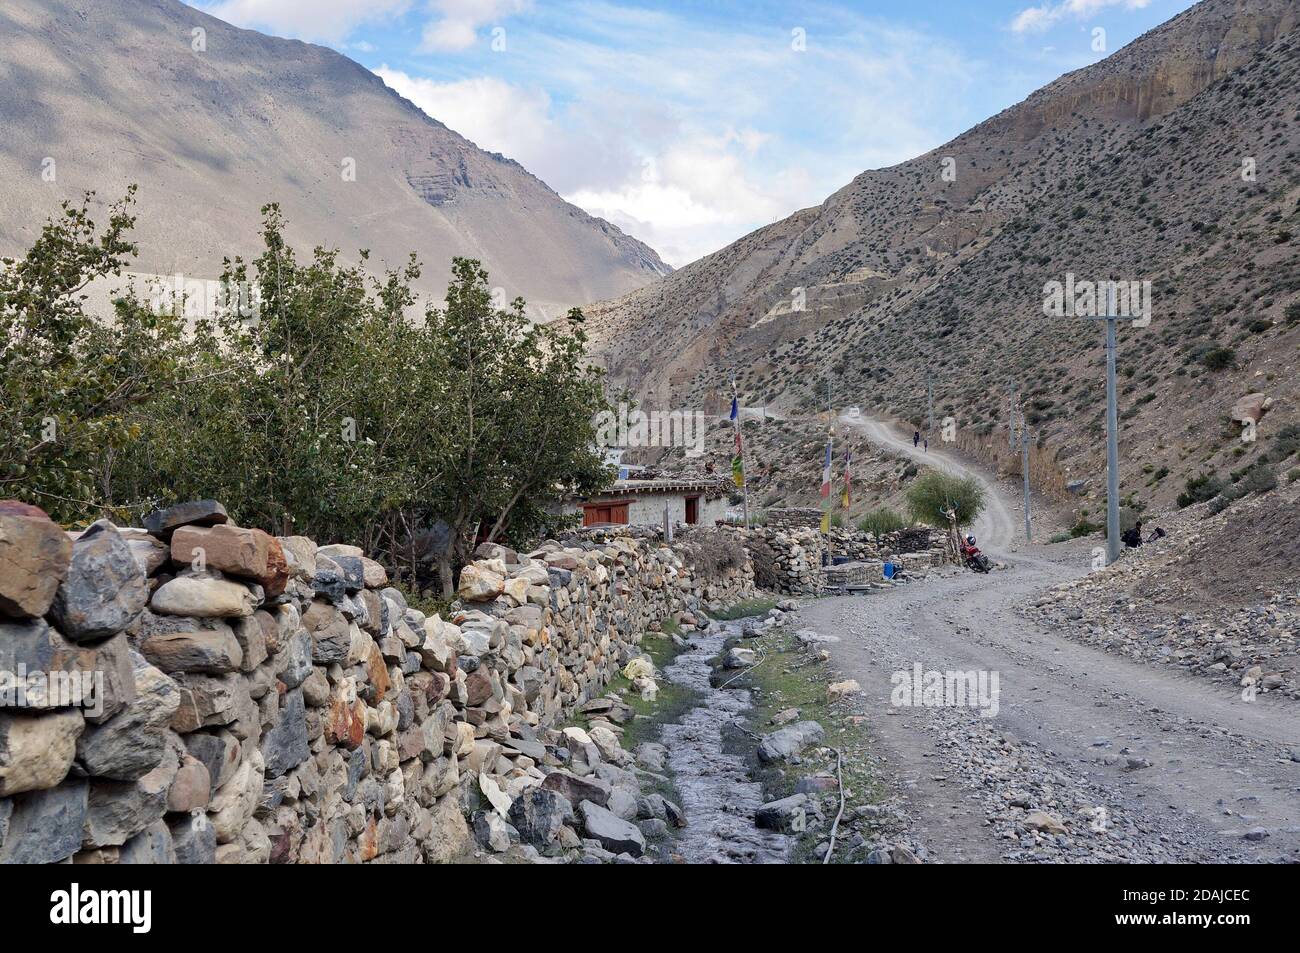 Eine unbefestigte Straße verläuft entlang eines Steinzauns im Himalaya, auf dem Weg nach Upper Mustang in Nepal. Stockfoto